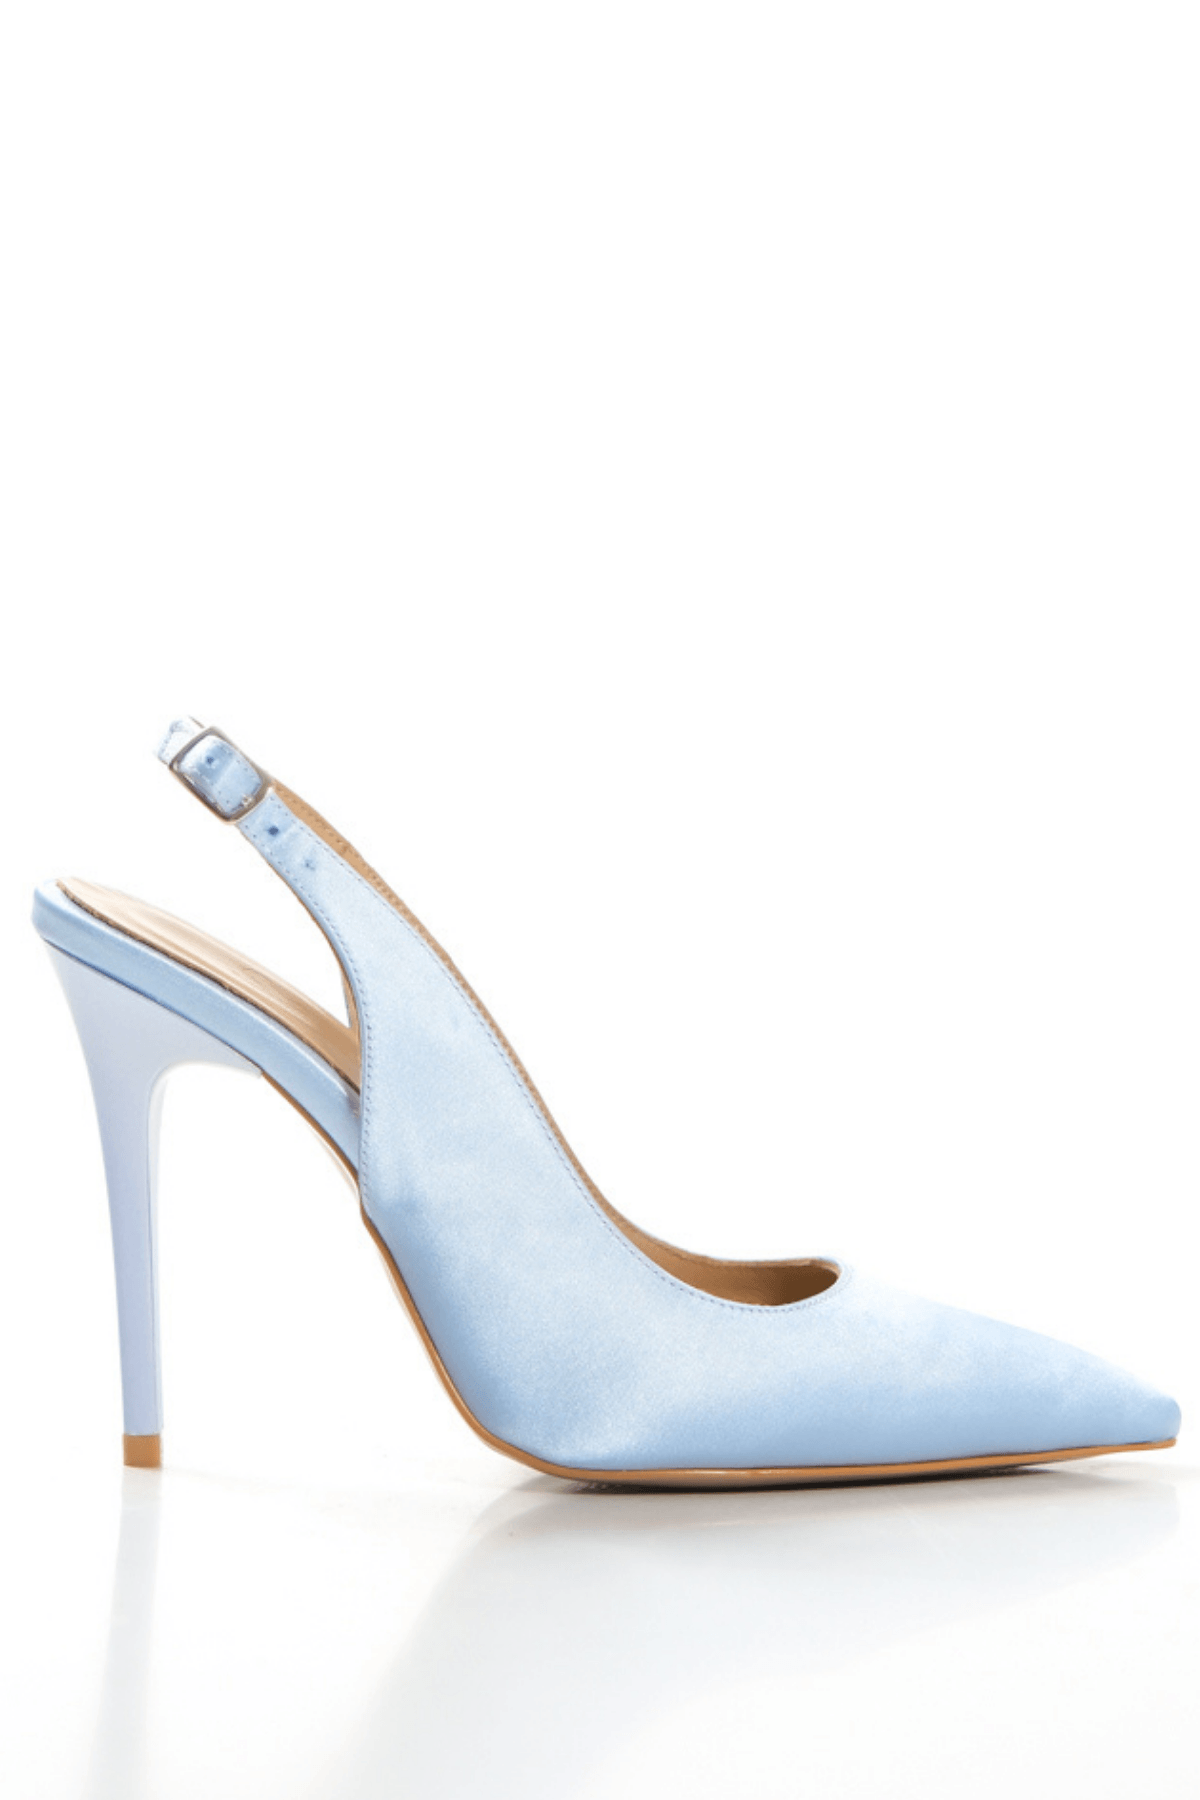 Kadın Saten İçi Hakiki Deri Arkası Açık Kemerli Tokalı Stiletto İnce Topuklu Ayakkabı - Mavi